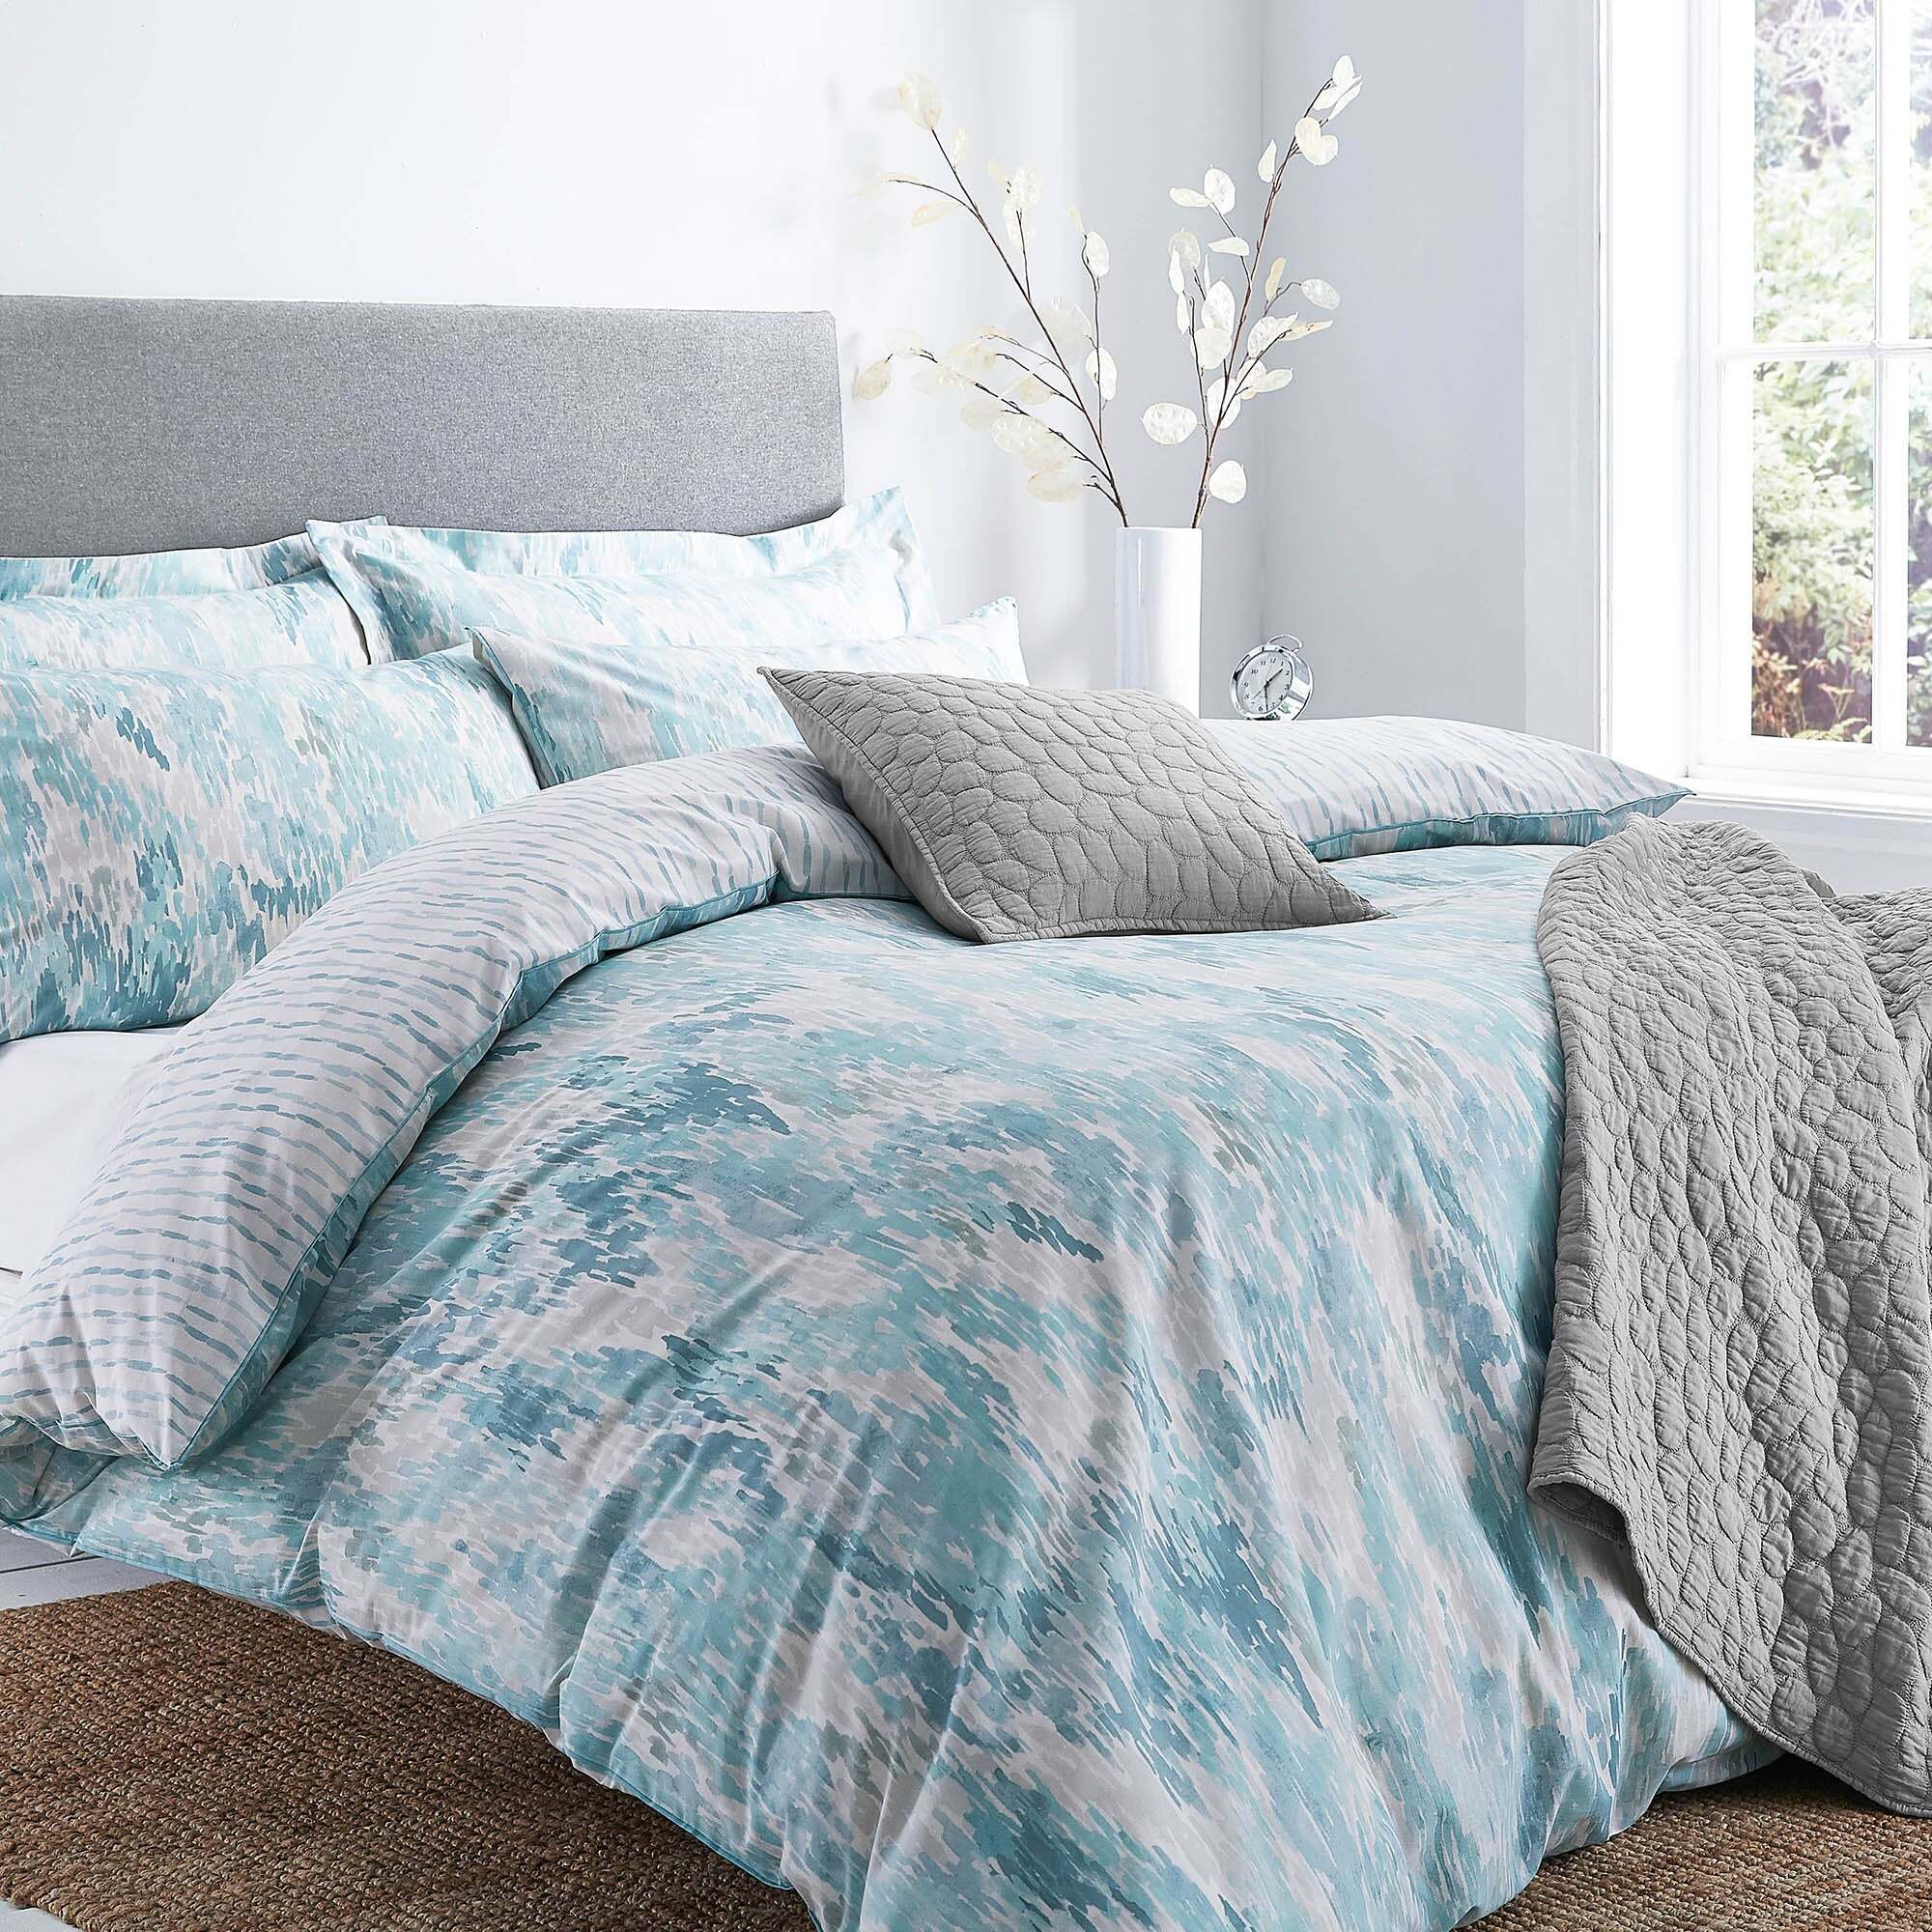 Make Use of Linen Bedding For a Healthier Sleep - Emperiortech